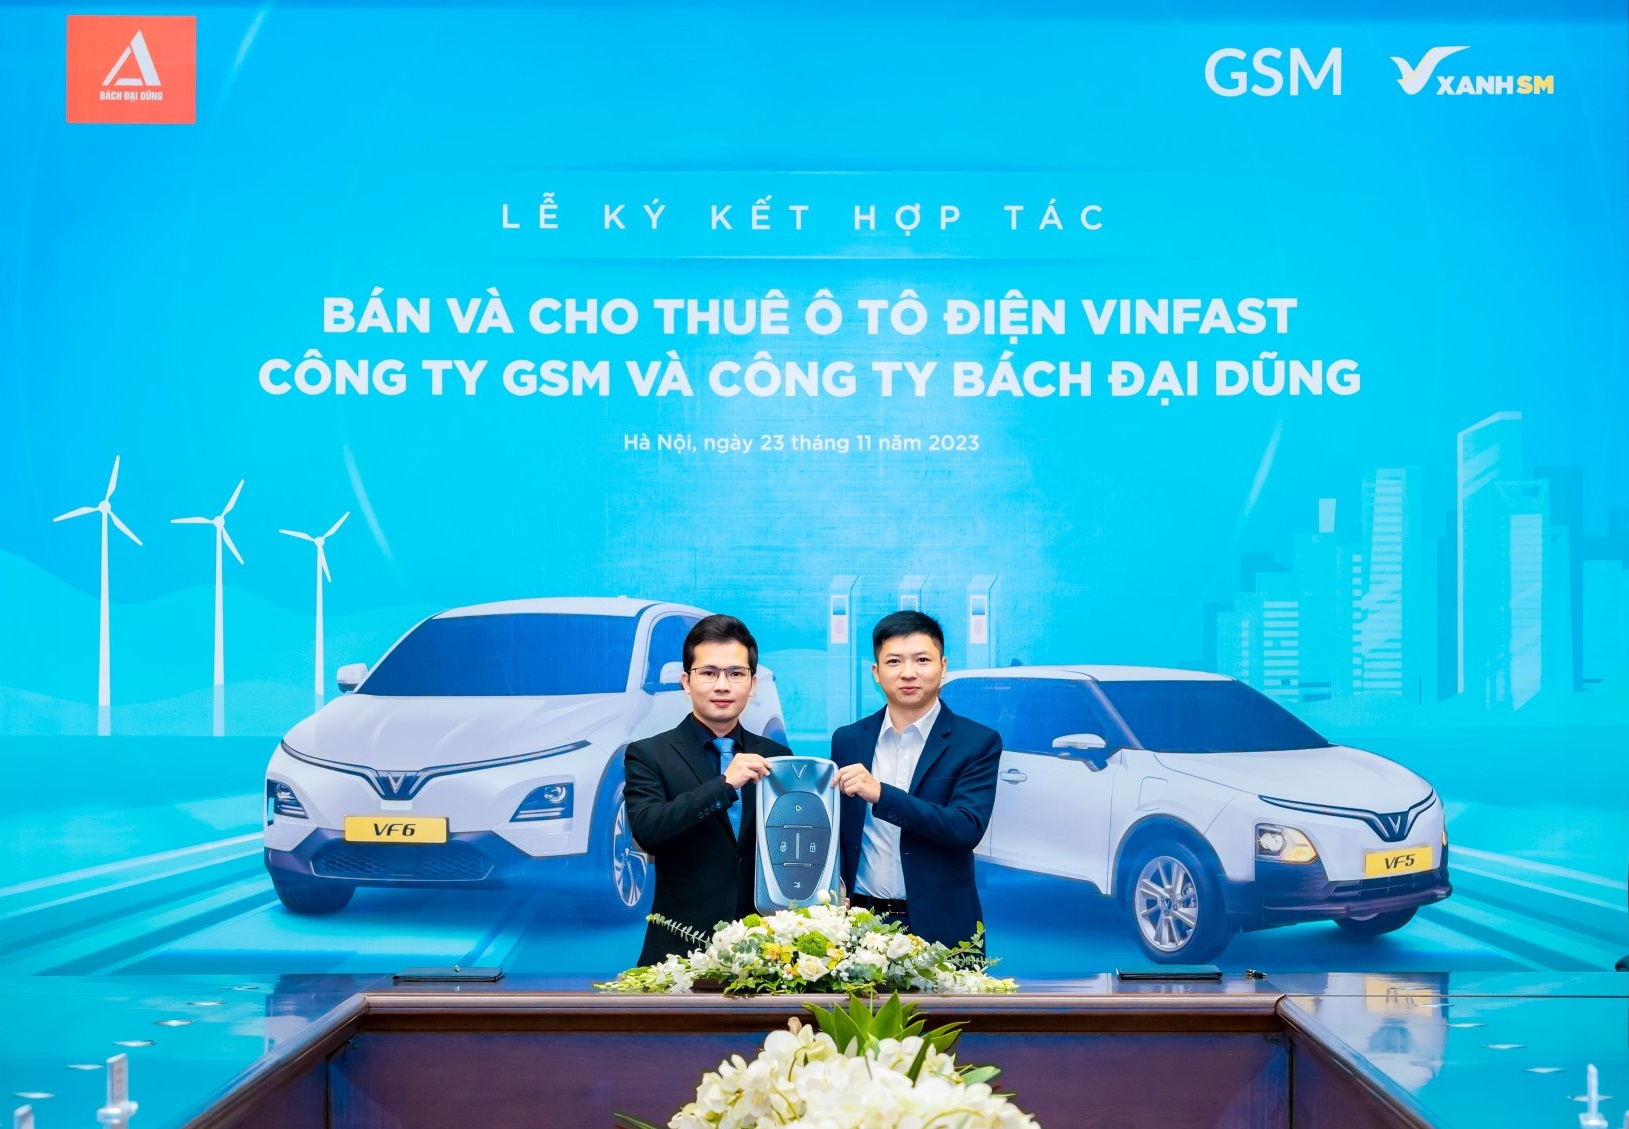 Hãng taxi thuần điện đầu tiên tại Hà Tĩnh mua và thuê 300 ô tô điện VinFast từ GSM- Ảnh 2.